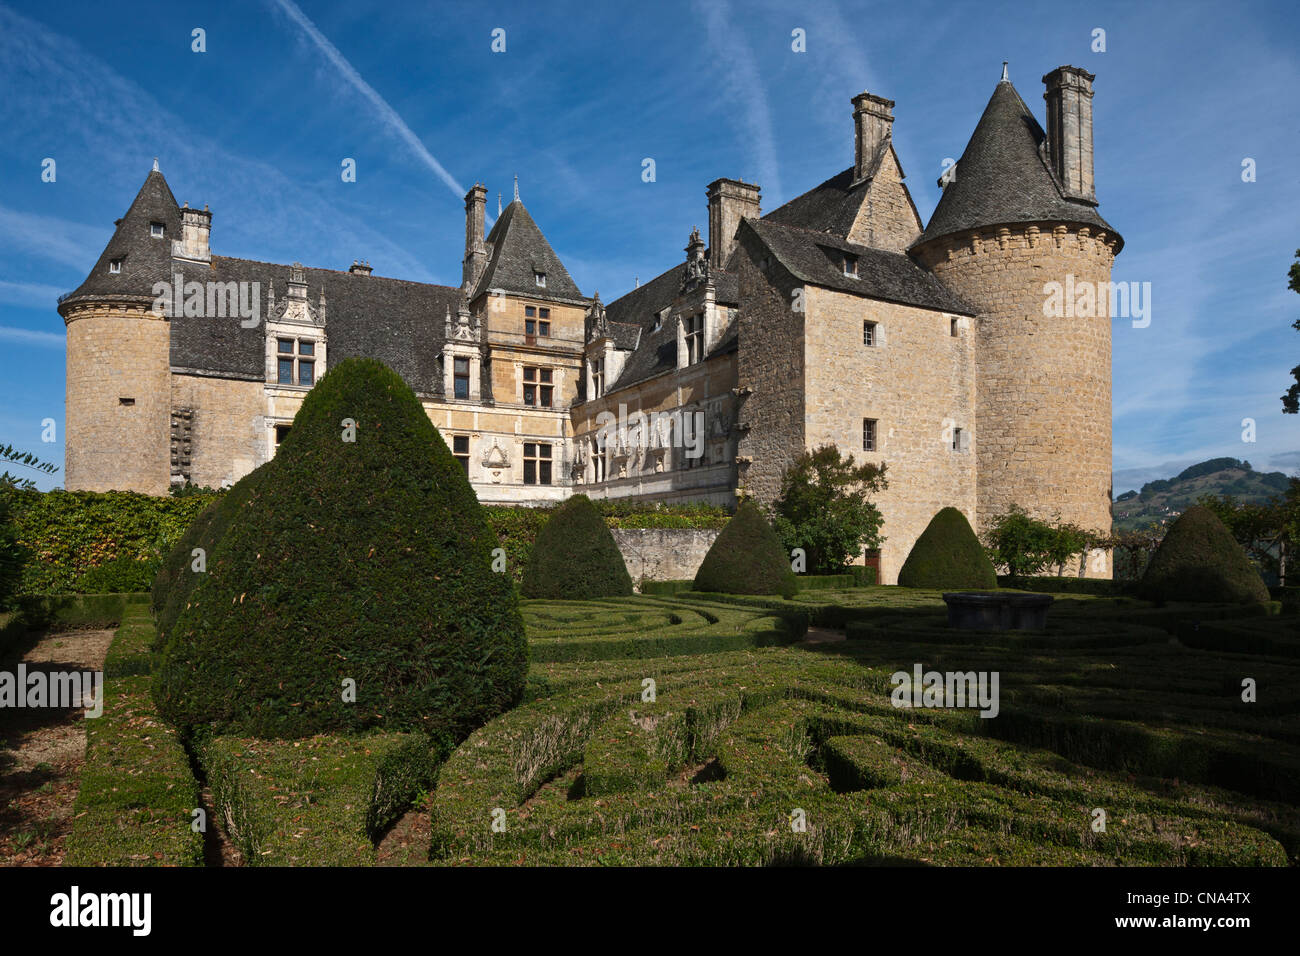 Francia, Lot, vicino a Saint Cere, Saint Jean Lespinasse, Le Chateau de Montal con il suo cortile rinascimentale e giardino alla francese Foto Stock